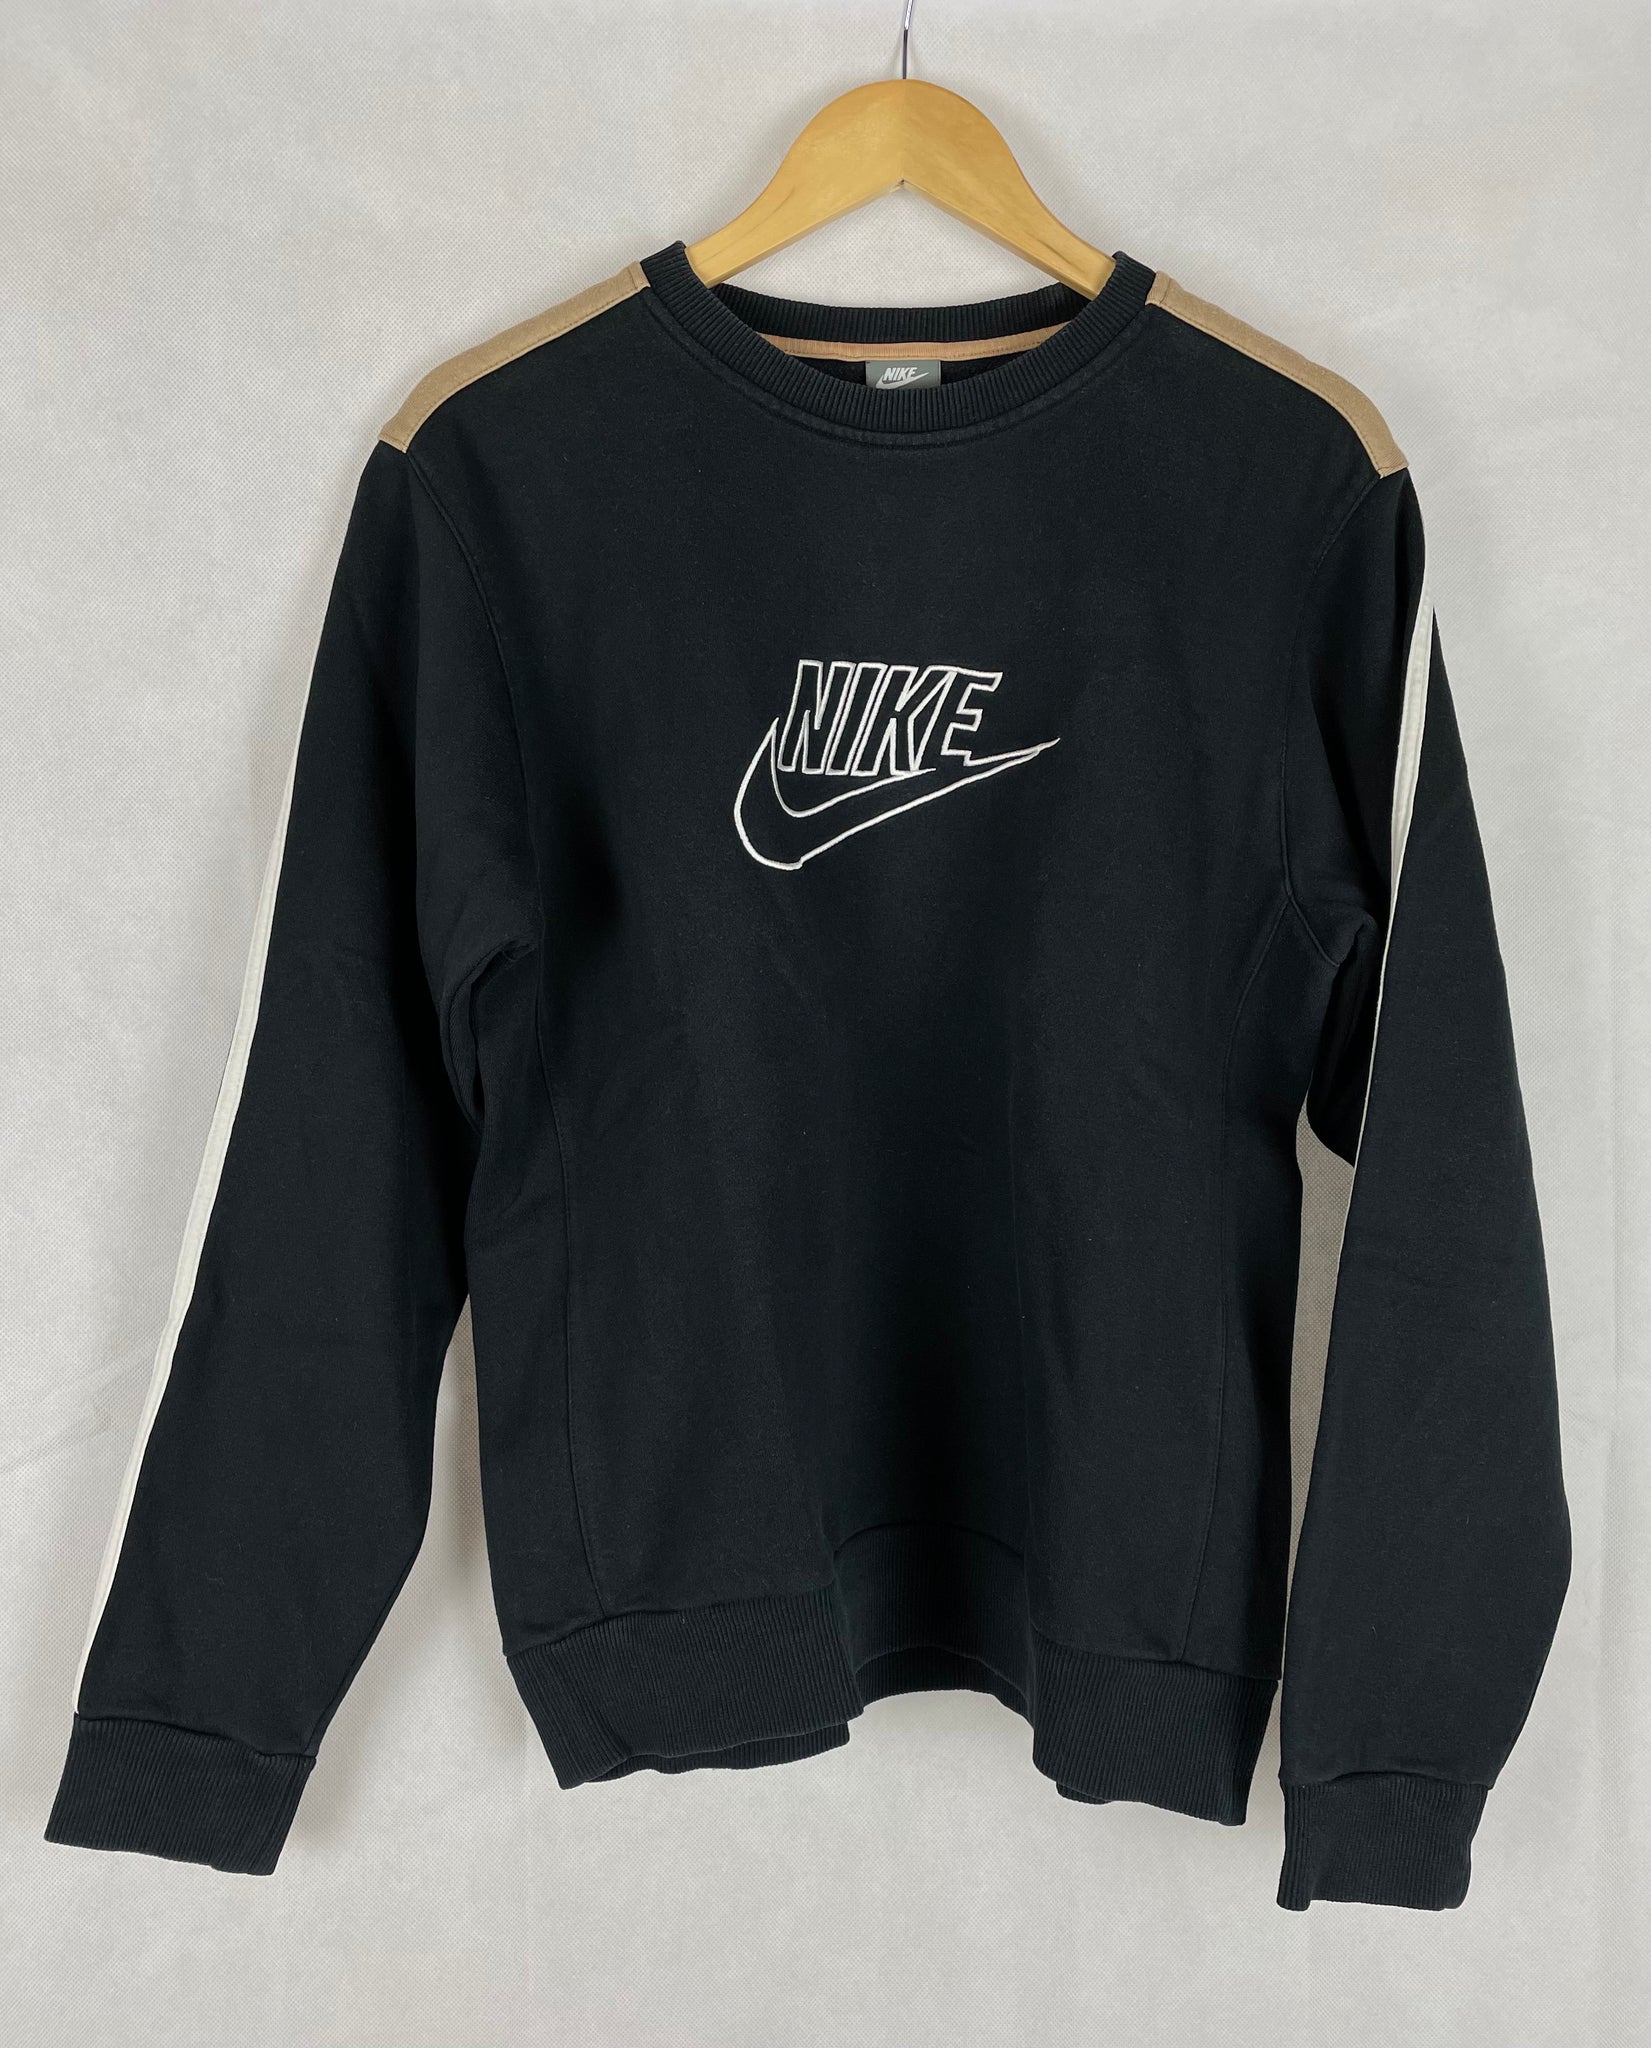 Vintage Nike Pullover Gr. M